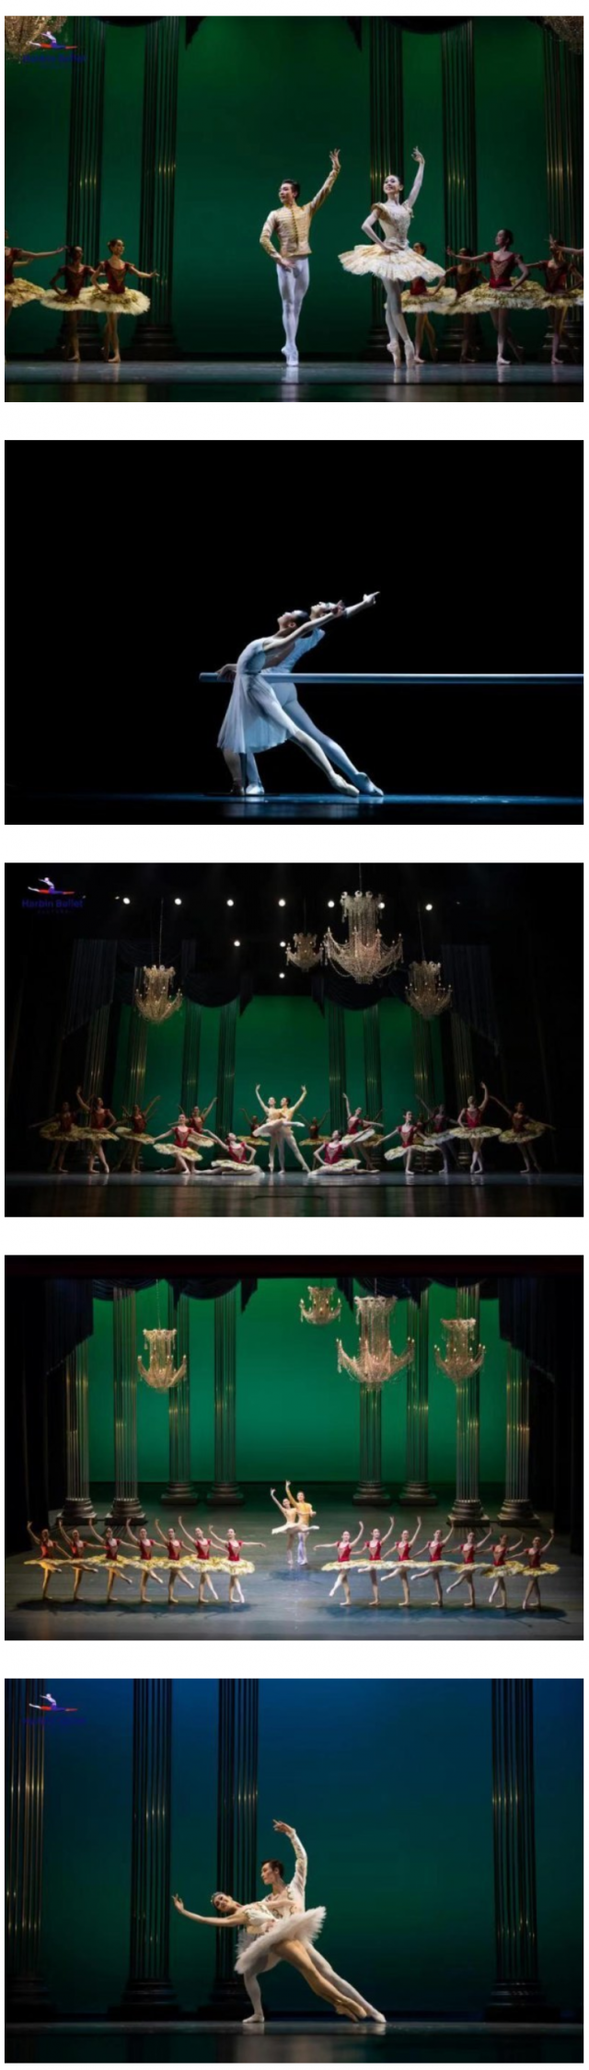 哈尔滨芭蕾舞团在冰雪世界中起舞飞翔